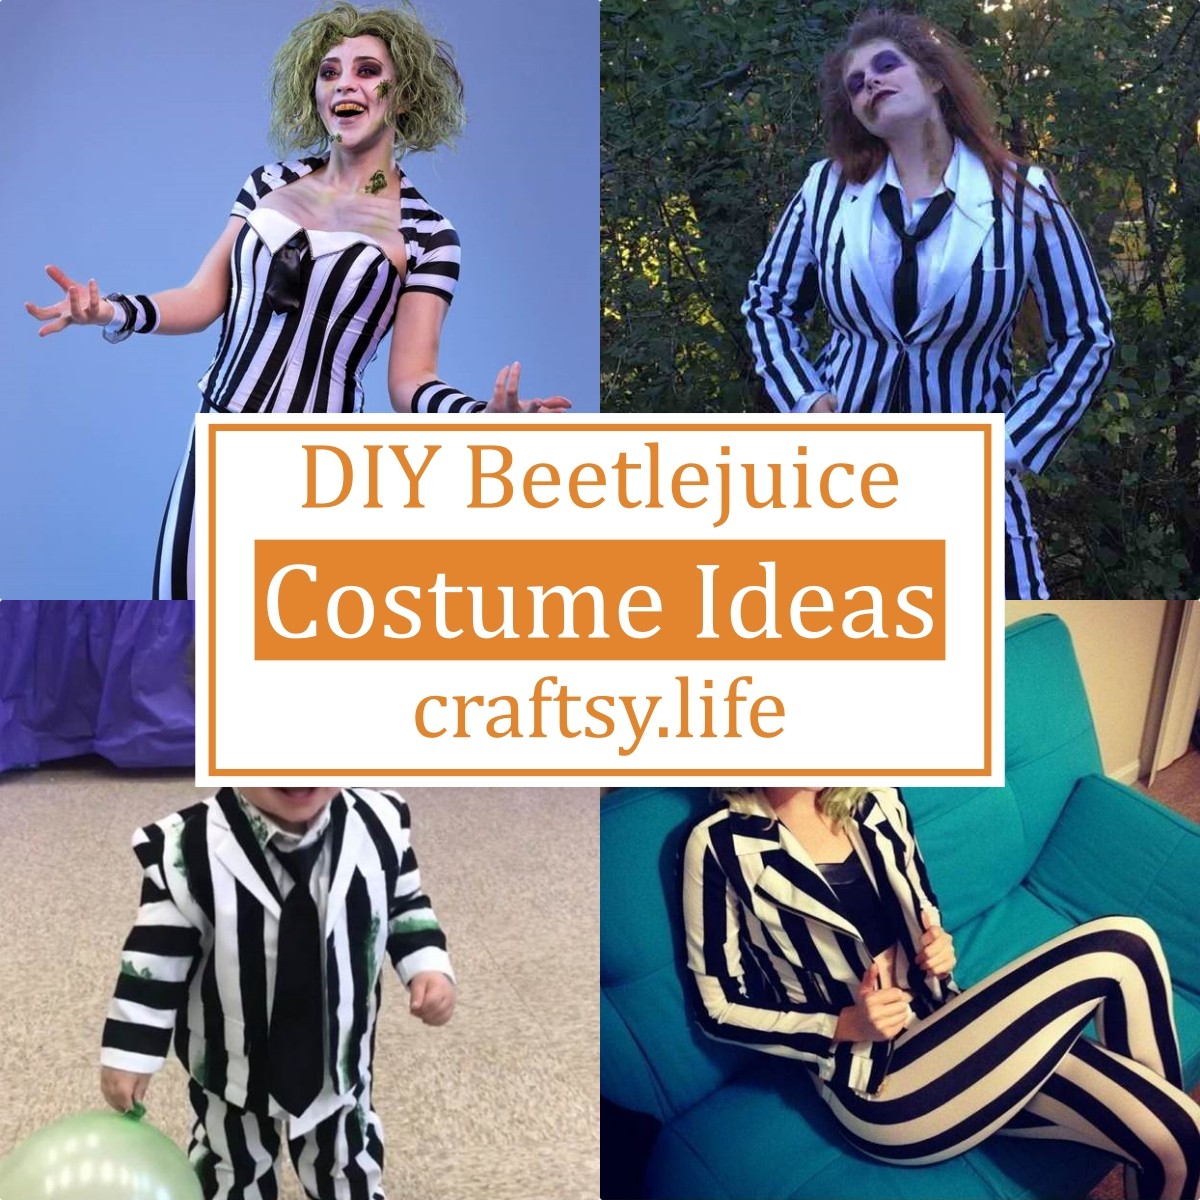 DIY Beetlejuice Costume Ideas